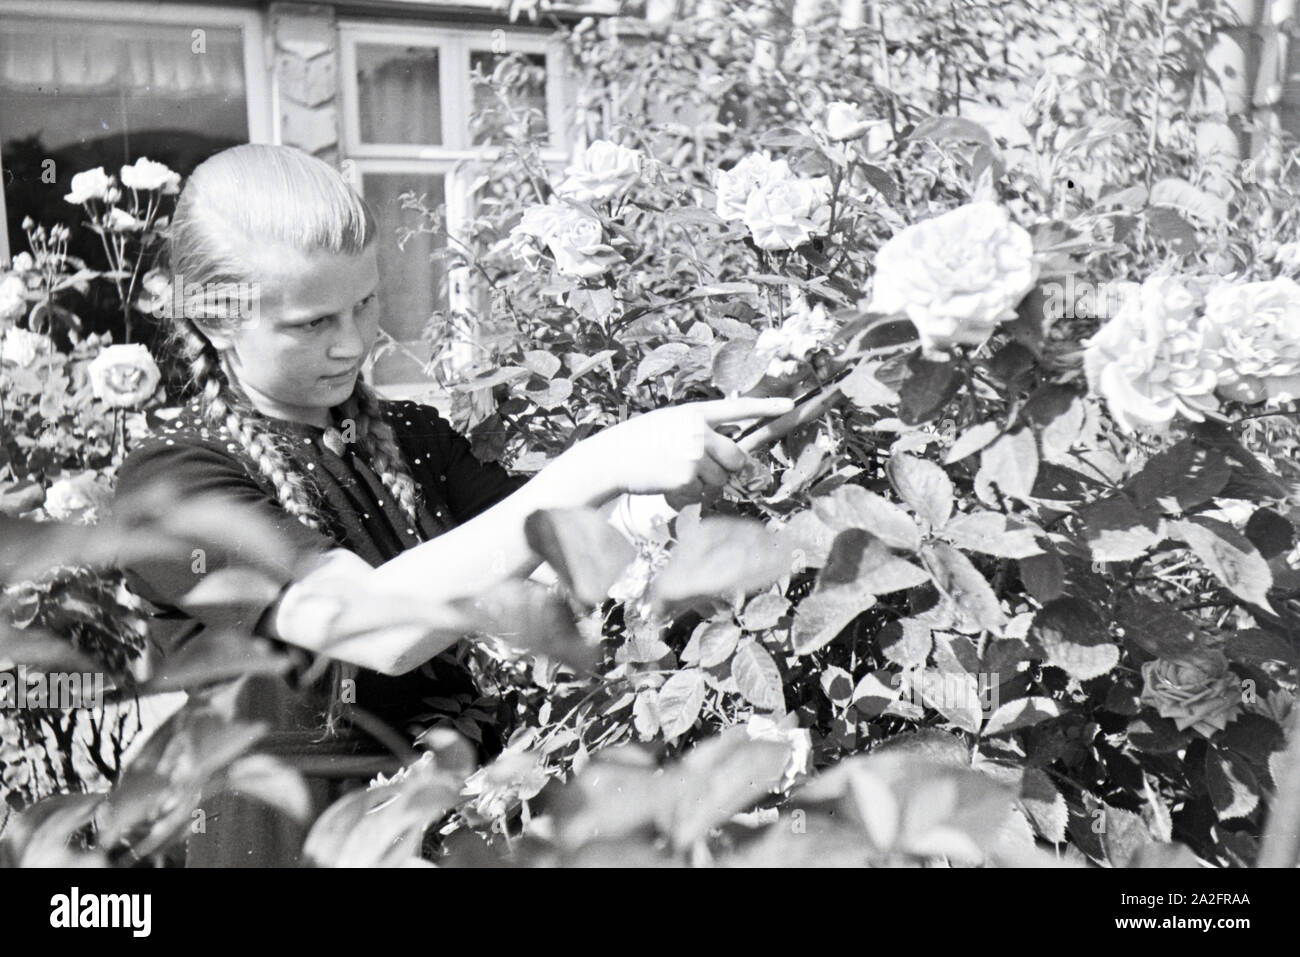 Schülerin des Kolonial Schülerheims Harzburg bei der Gartenarbeit, Deutsches Reich 1937. Studente del coloniale scuola residenziale Harzburg lavora in giardino; Germania 1937. Foto Stock